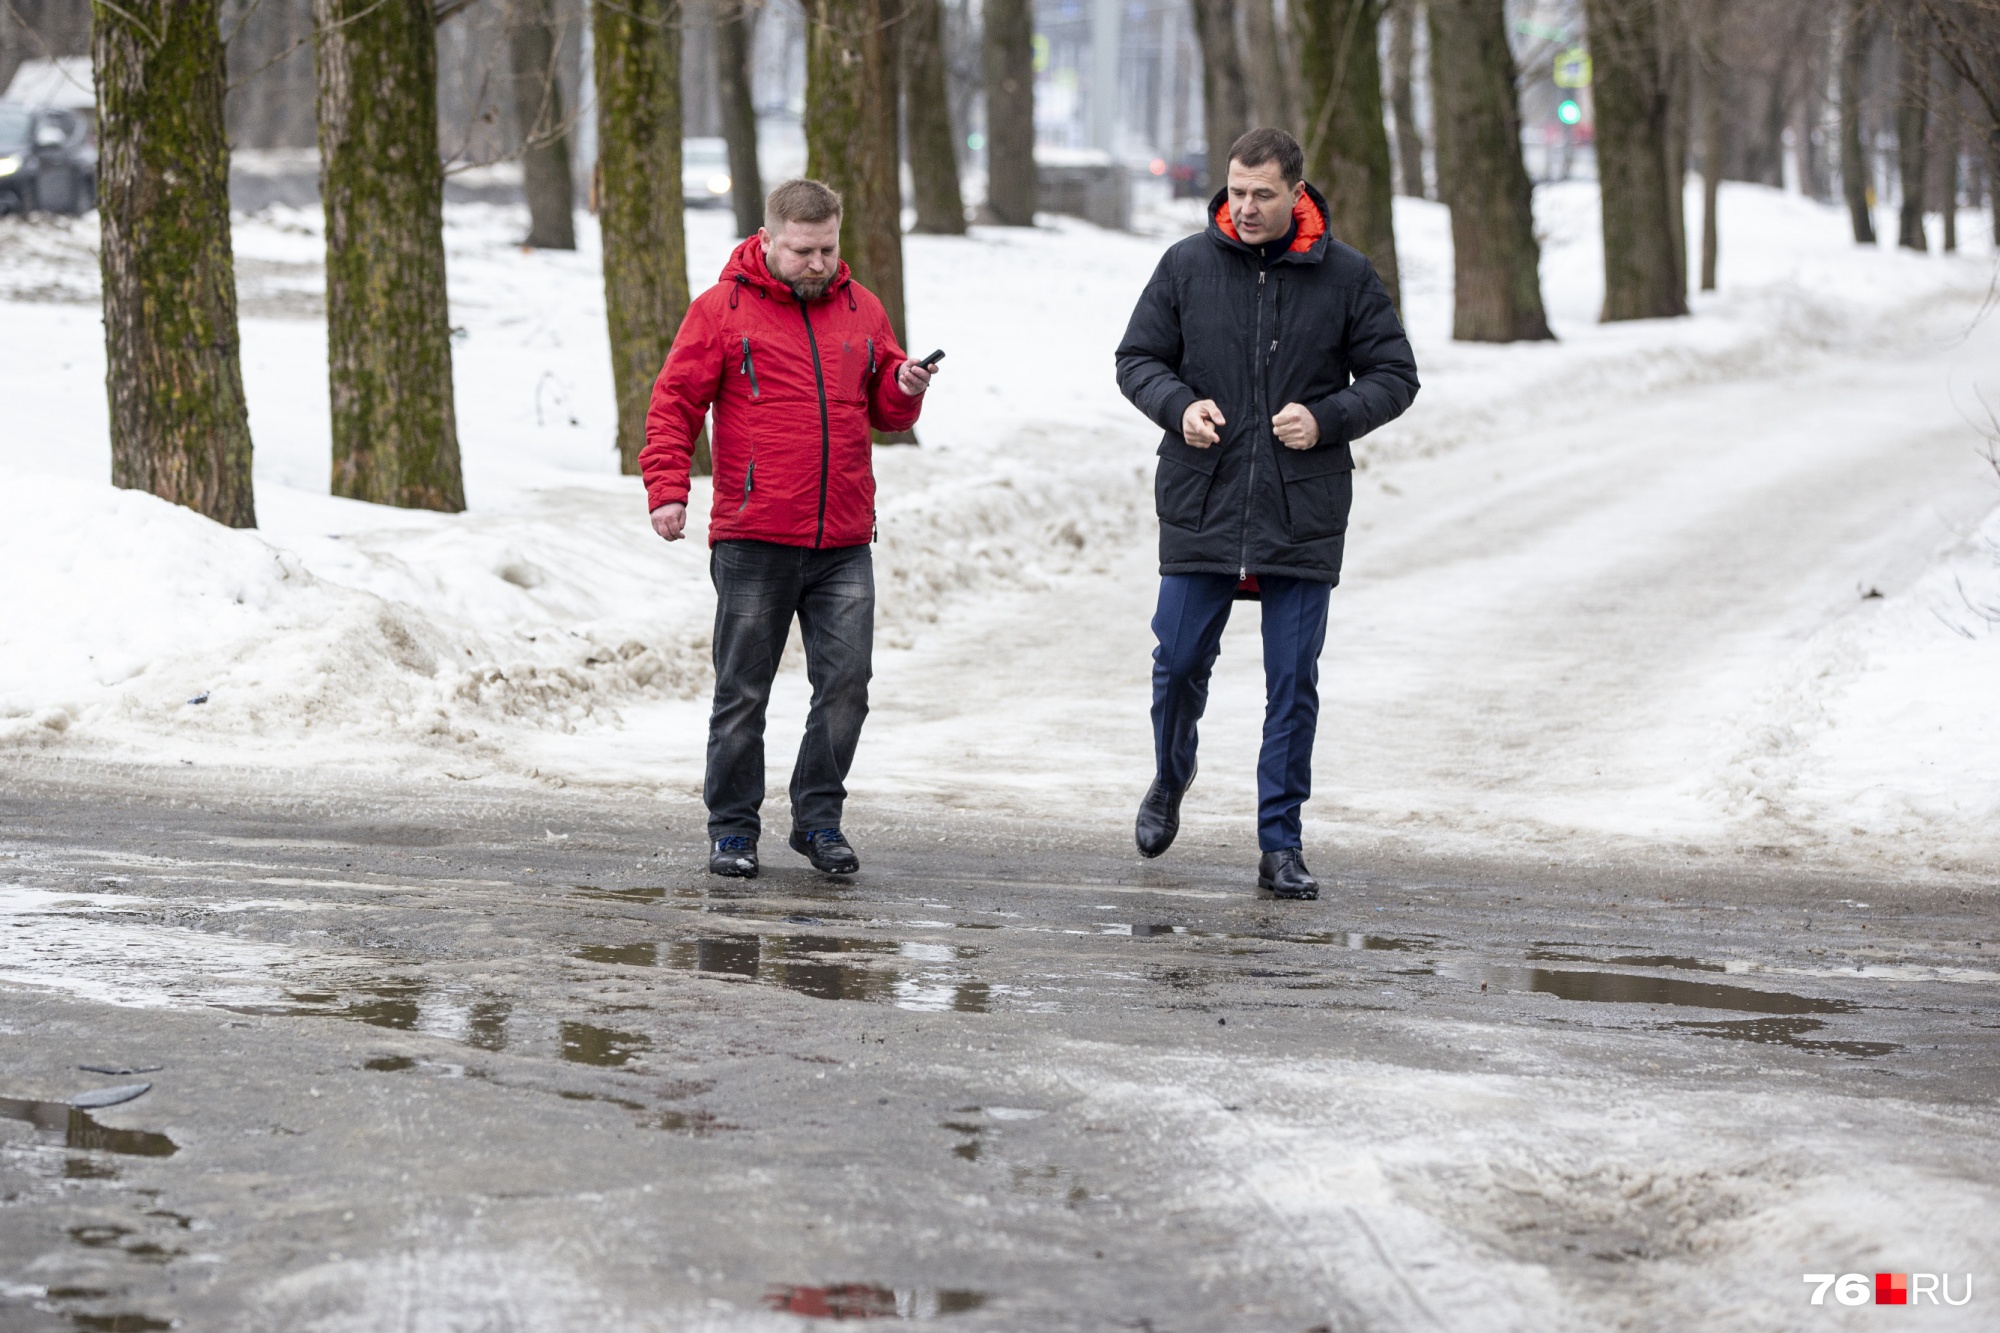 Мэр сказал, что есть города, где с уборкой справились хуже, чем в Ярославле. Но называть их не стал